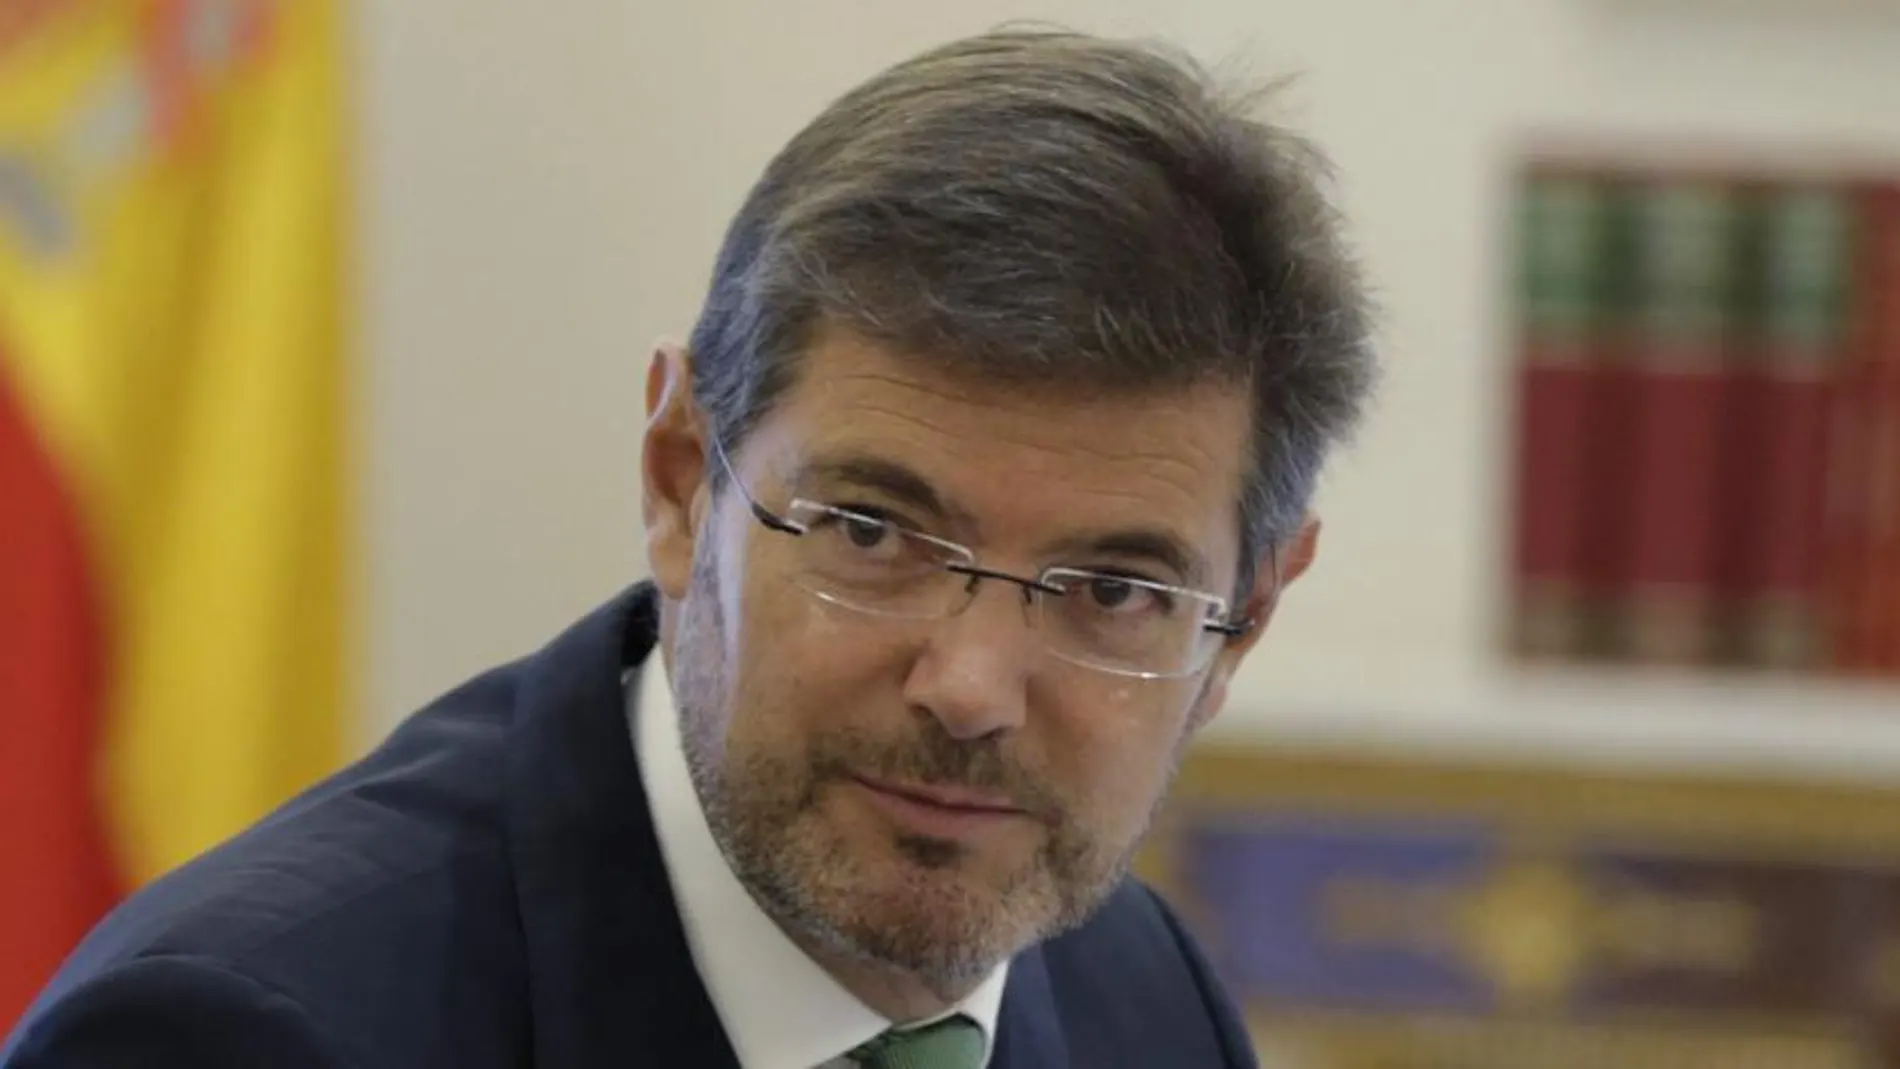 El nuevo ministro de Justicia, Rafael Catalá Polo, al inicio hoy de la reunión extraordinaria del Consejo de Ministros, presidida por el jefe del Ejecutivo, Mariano Rajoy